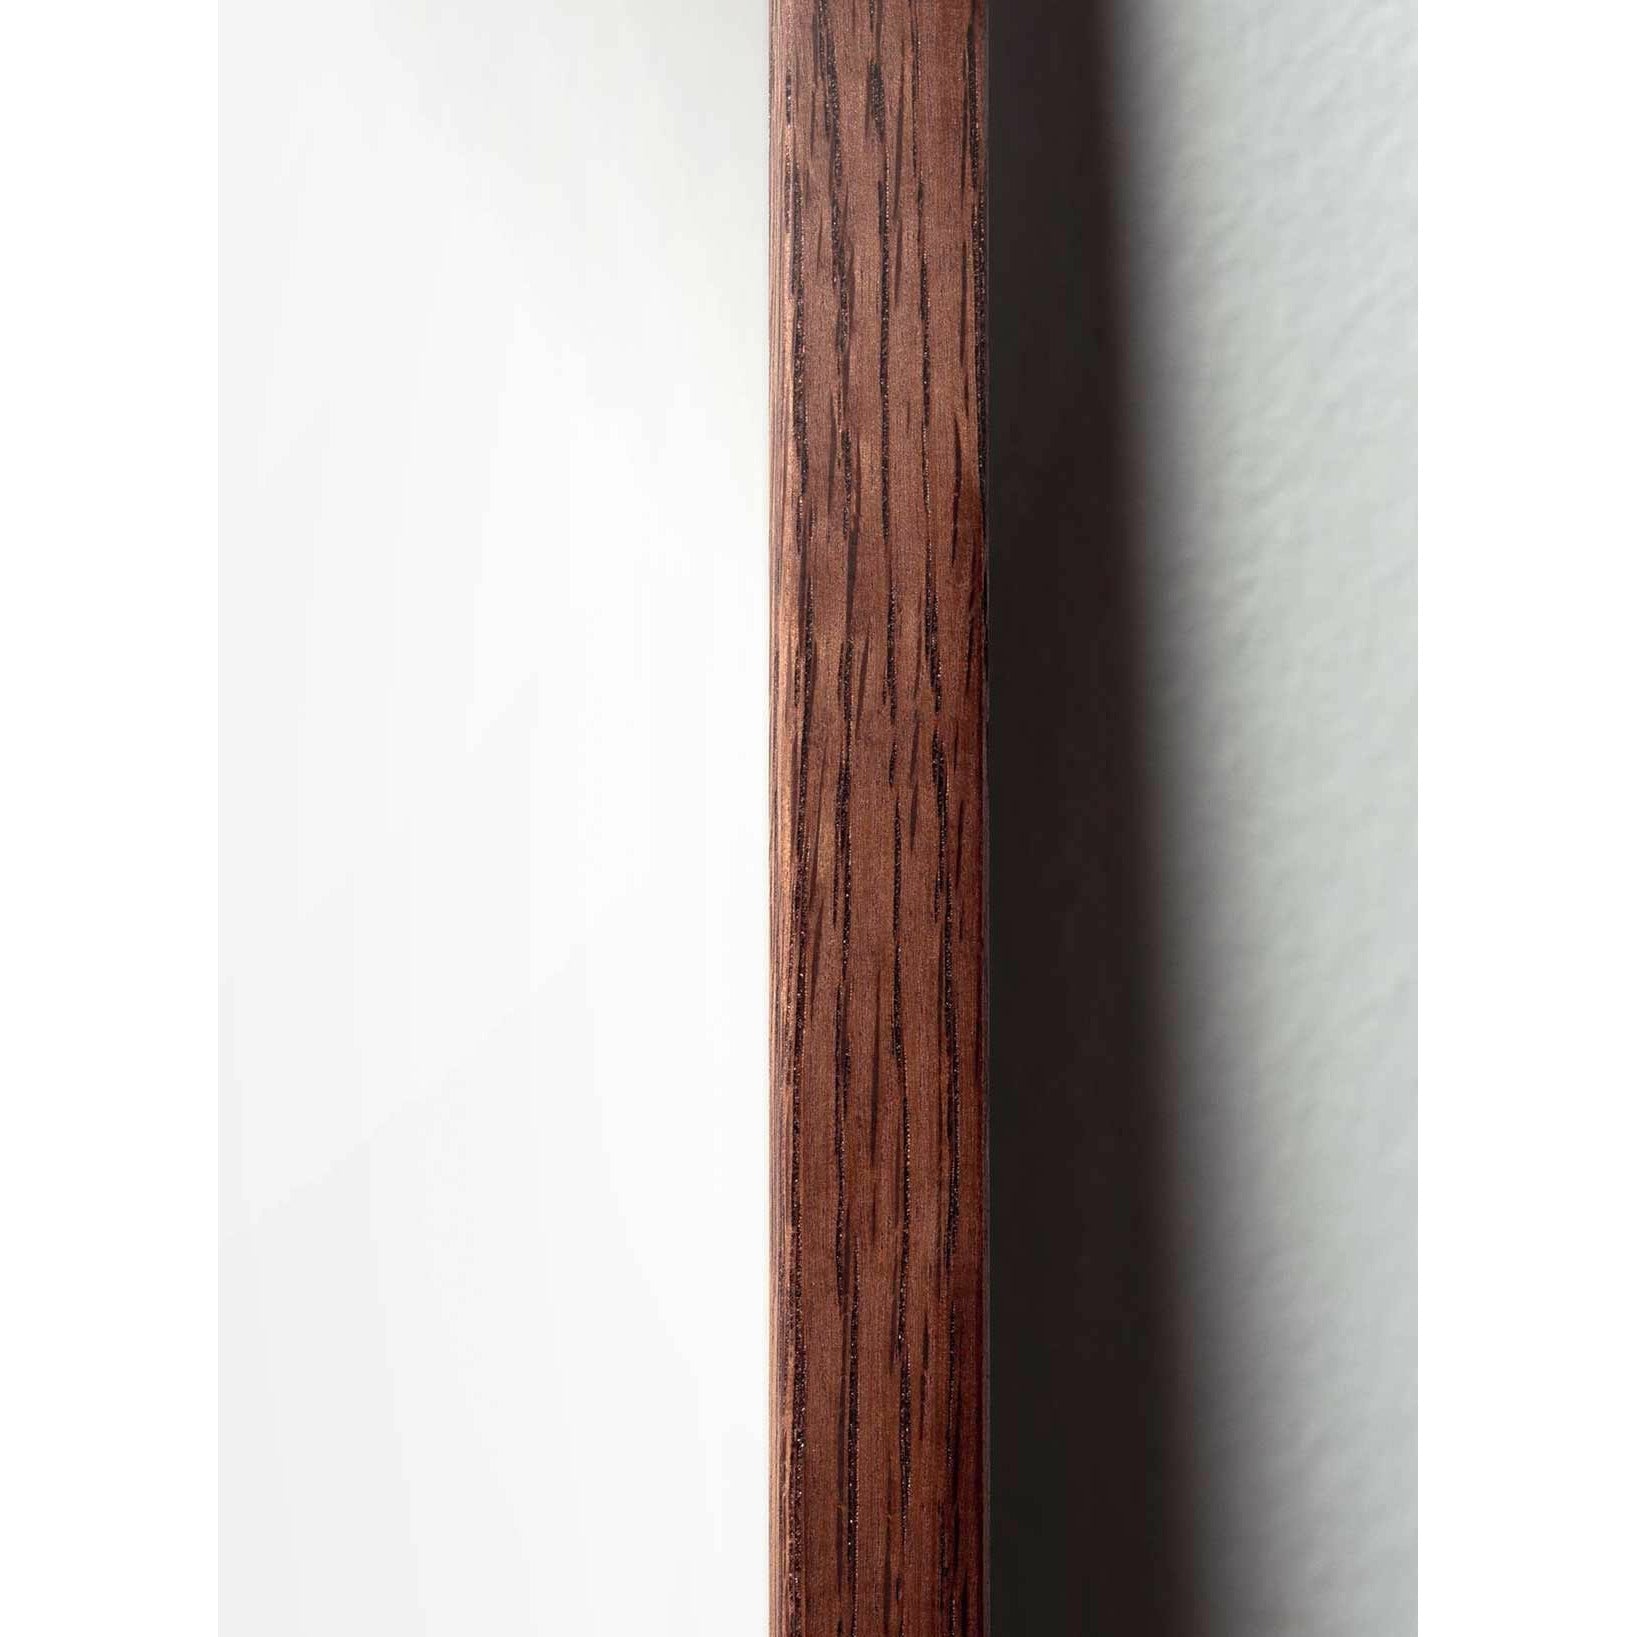 Póster de línea de huevo de precisión, marco de madera oscura 30x40 cm, fondo blanco